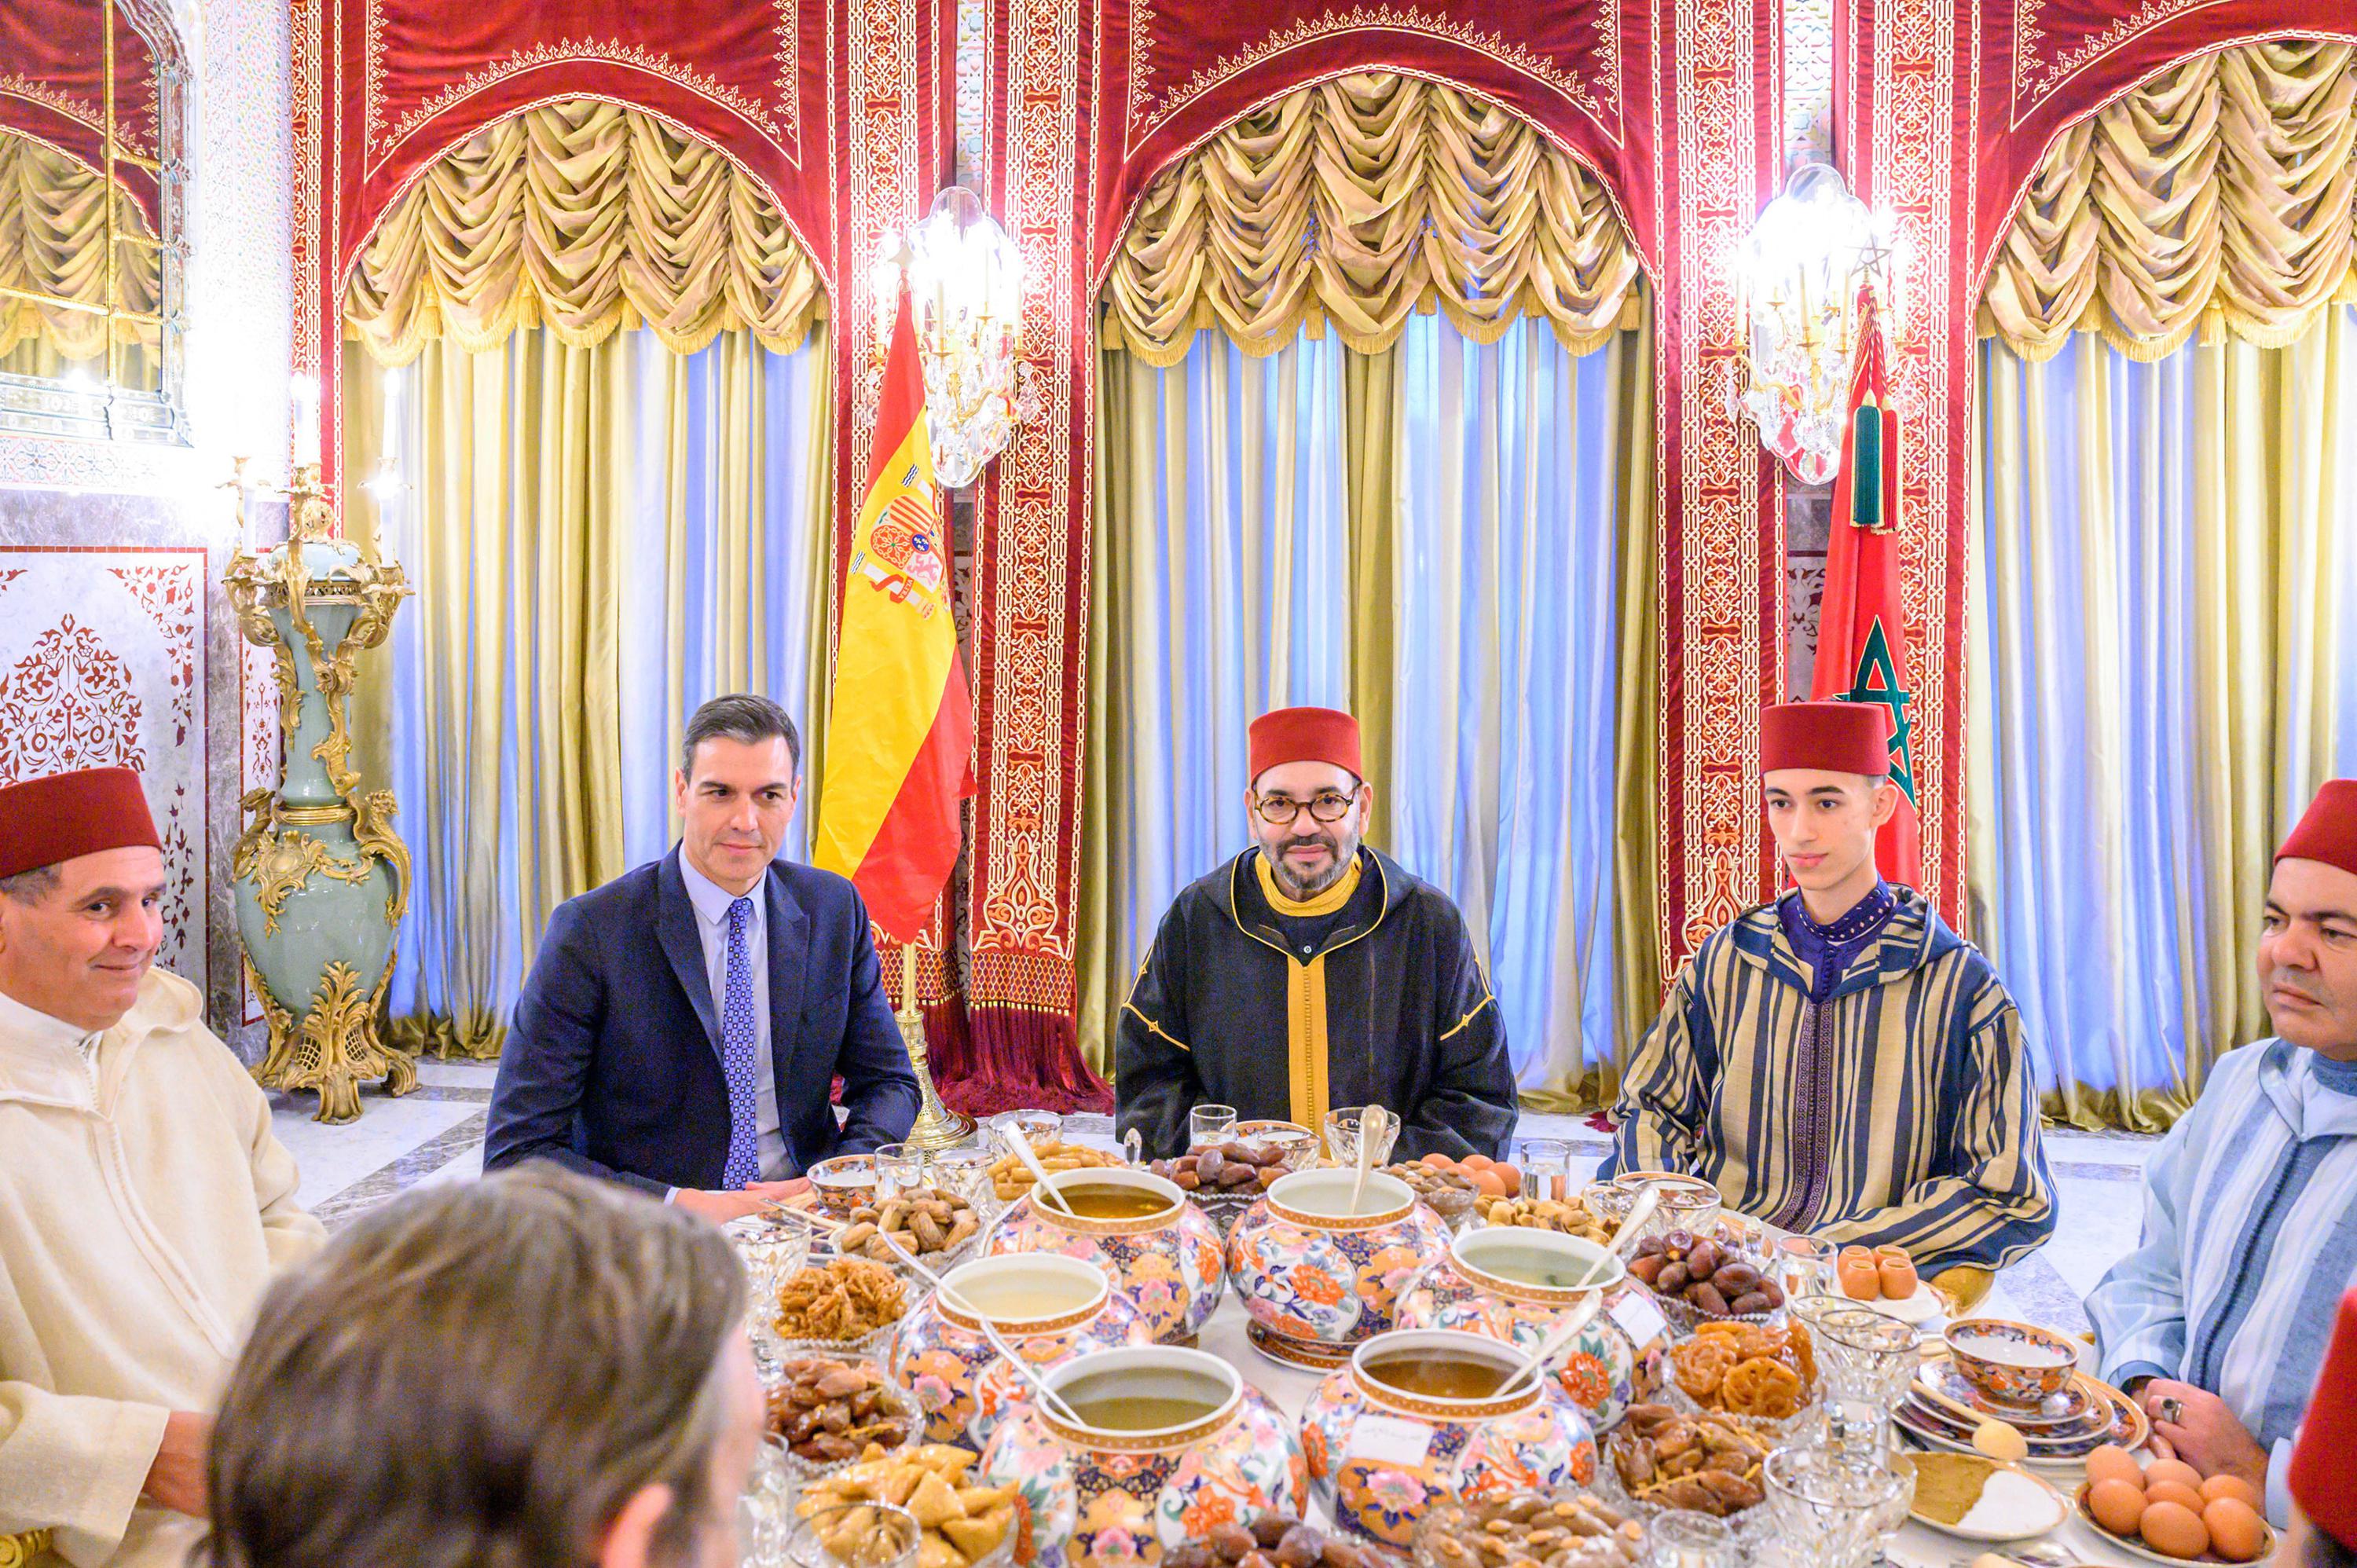 Sur cette photo fournie par le Palais Royal, le roi Mohammed VI du Maroc, au centre, le Premier ministre espagnol Pedro Sánchez, deuxième à gauche, le prince héritier Moulay Hassan, deuxième à droite, le prince Moulay Rachid, frère du roi, à droite, et le premier ministre marocain Aziz Akhannouch , à gauche, pose devant un repas Iftar, le dîner au cours duquel les musulmans terminent leur jeûne quotidien du Ramadan au coucher du soleil, à la résidence royale du roi à Salé, Maroc, le jeudi 7 avril 2022.